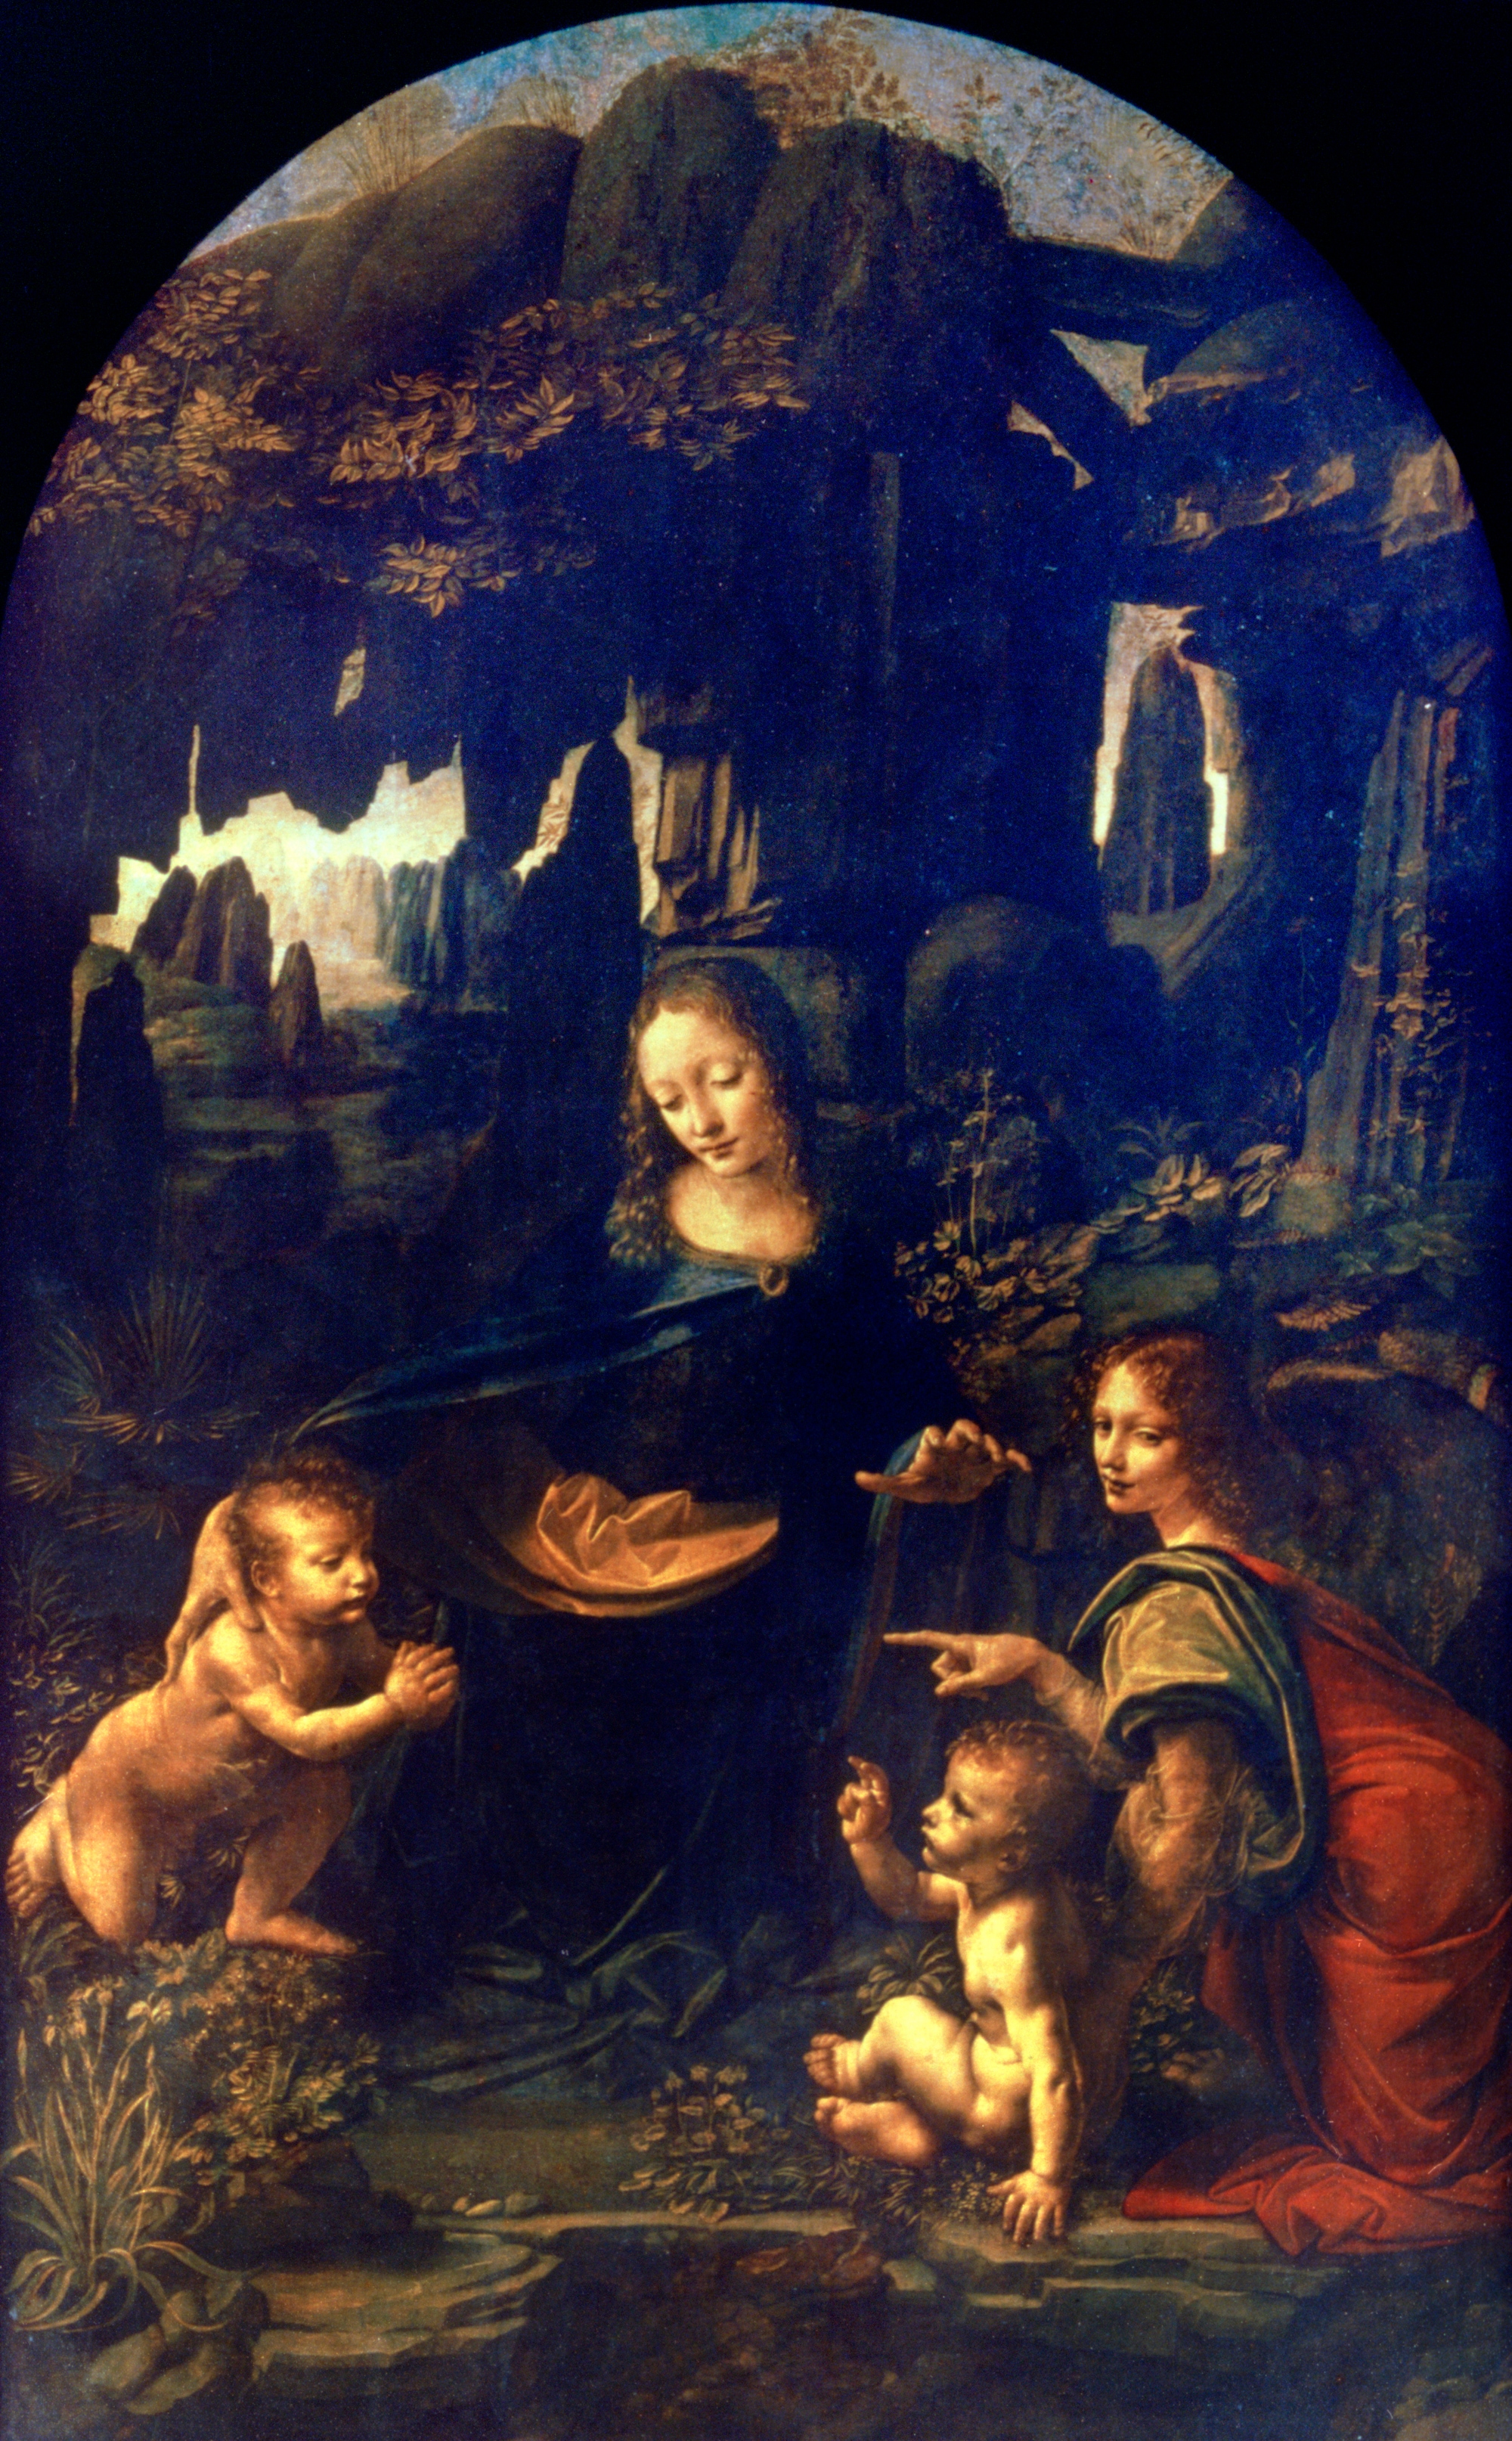 "Vergine delle Rocce" è un dipinto a olio su tavola trasportato su tela (199x122 cm) di Leonardo da Vinci, databile al 1483-1486 e conservato nel Musée du Louvre di Parigi.